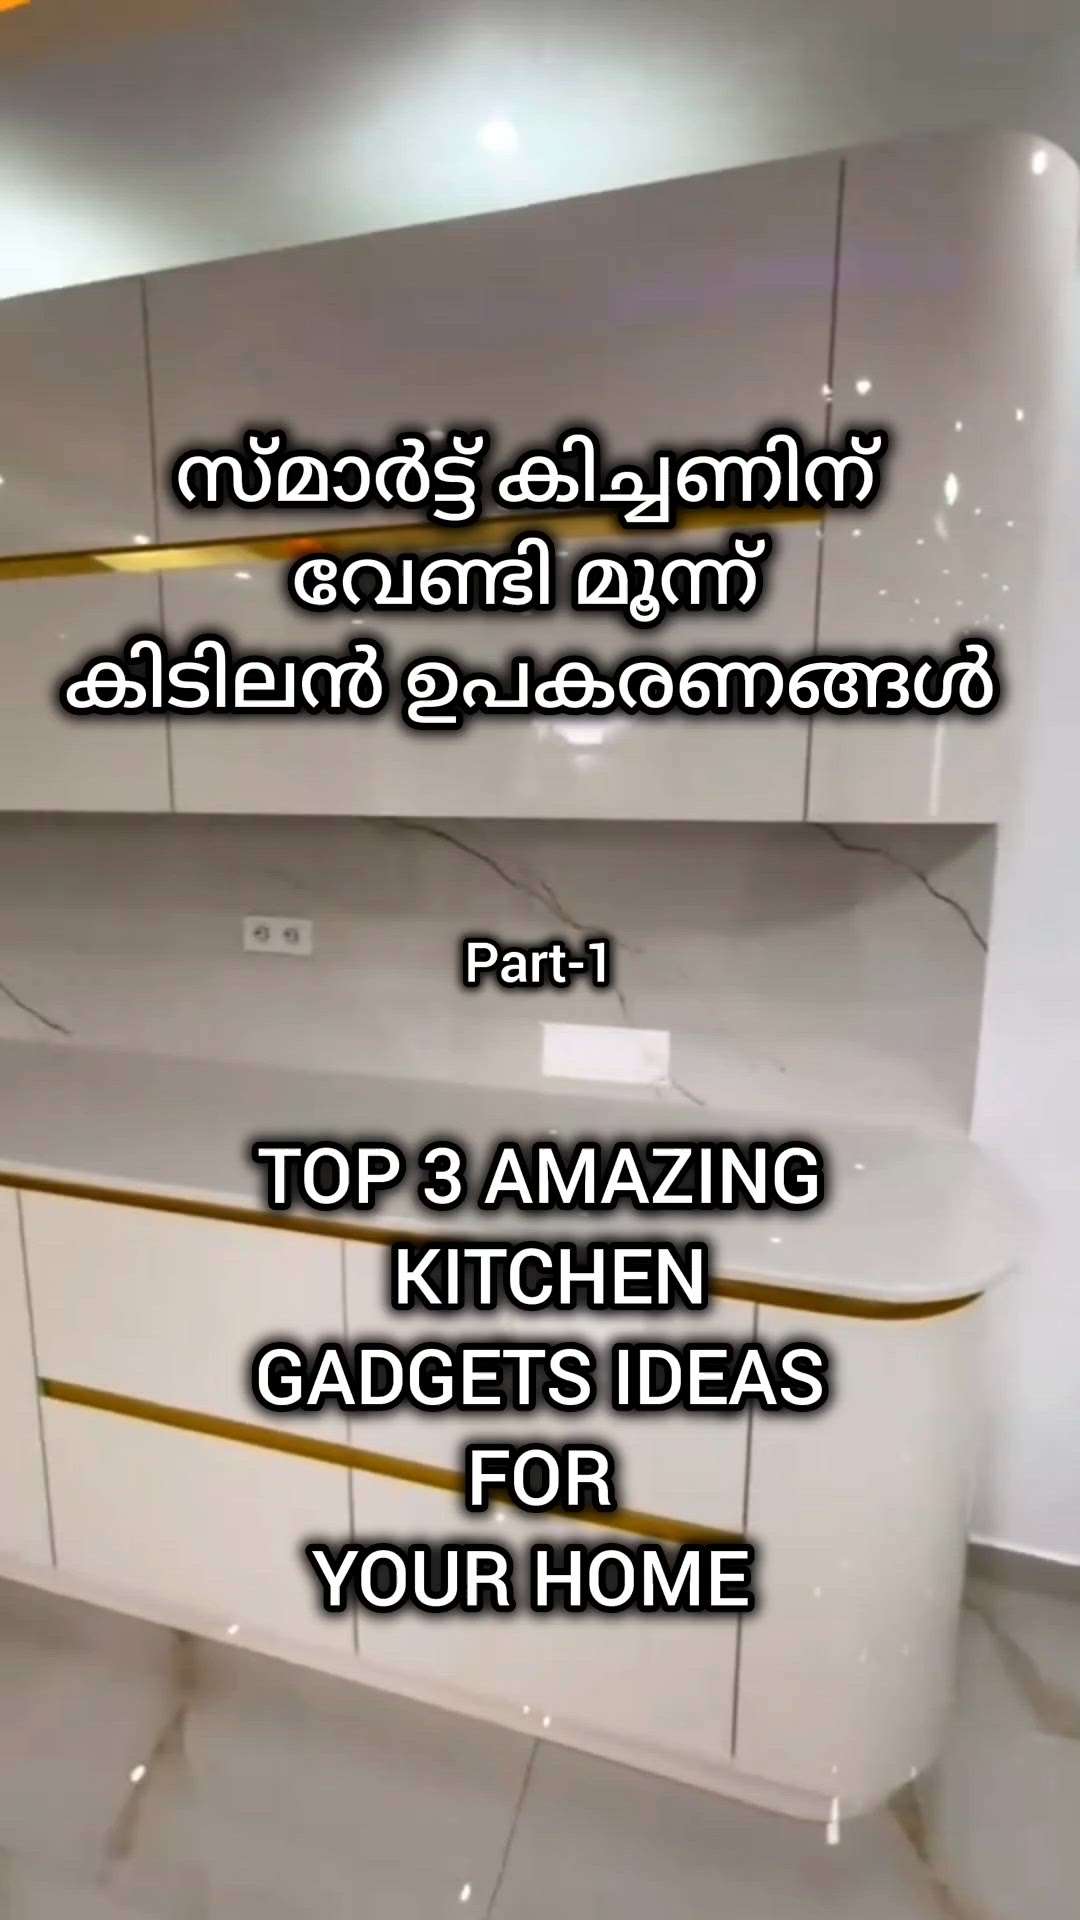 സ്മാർട്ട്‌ കിച്ചണിന് വേണ്ടി മൂന്നു അടിപൊളി ഉപകരണങ്ങൾ

 top 3 smart gadgets for kitchen

#Creatorsofkolo #top3 #kitchenideas #modernhome #ideas #kitchen#kitchengadgets
#smartkitchen